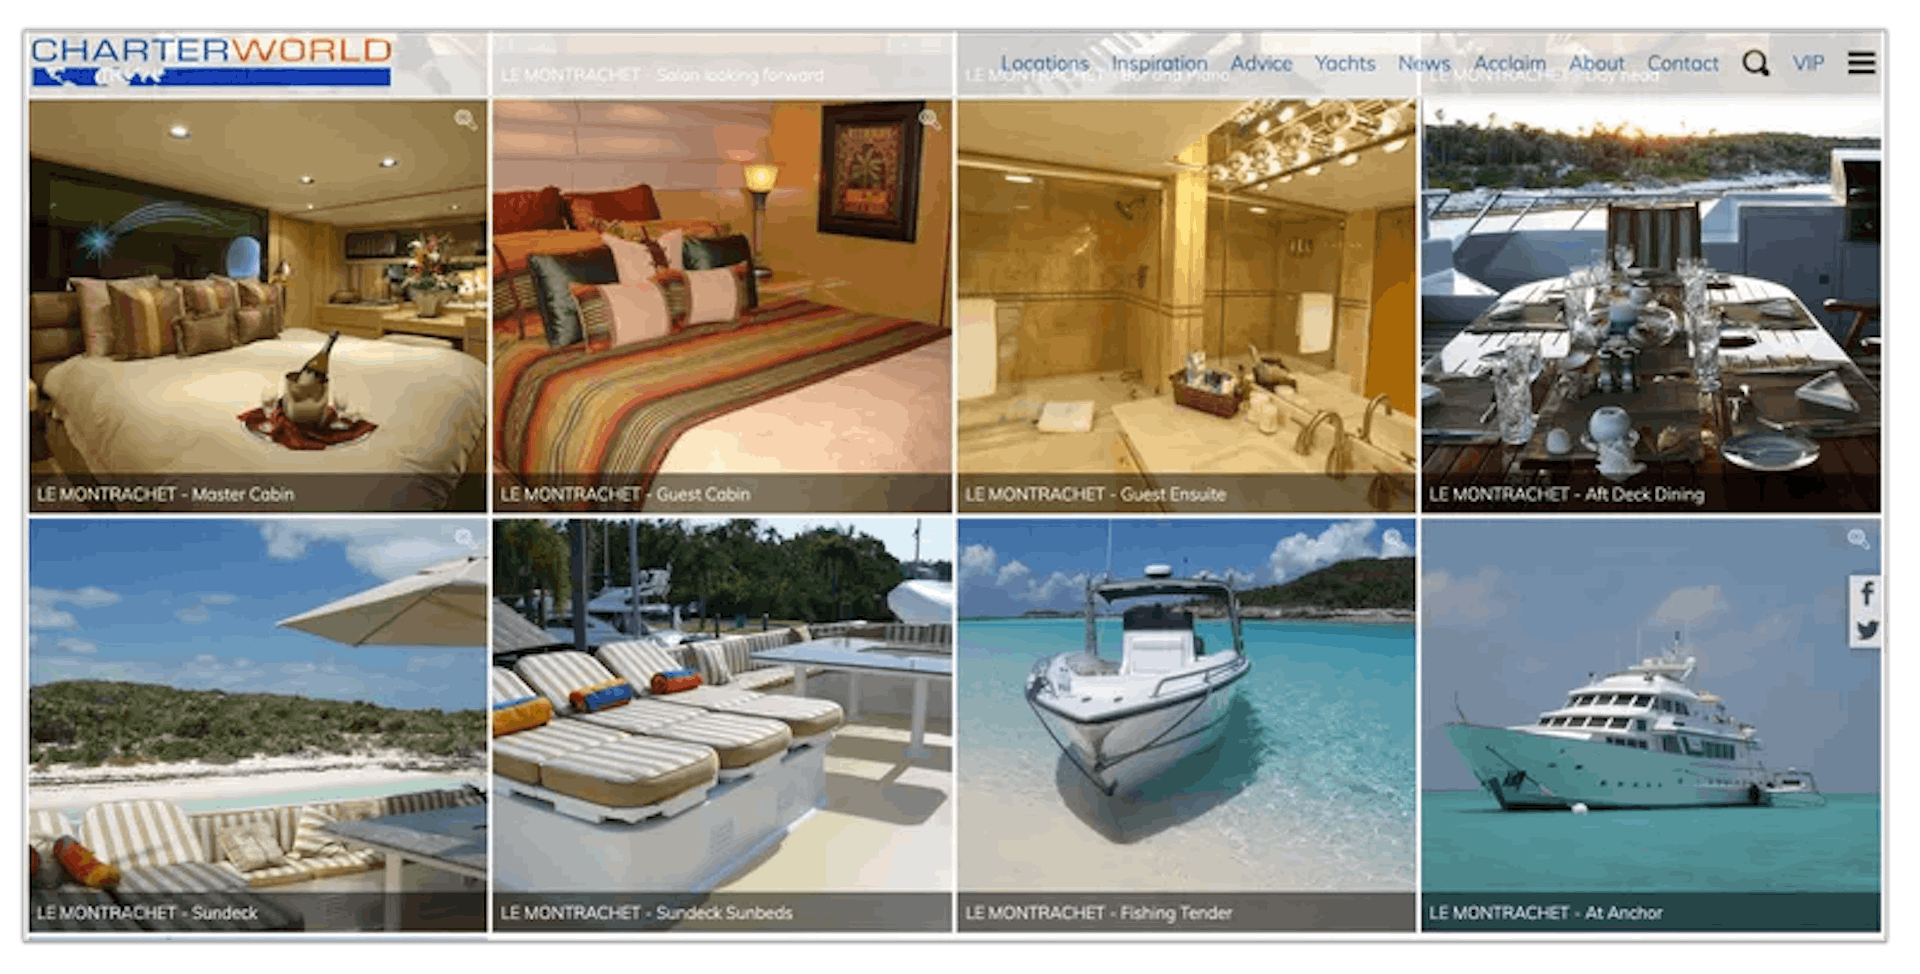 Novelly nimmt seine Luxusyacht Le Montrachet oft mit auf Angelausflüge rund um die Exuma-Inseln der Bahamas. Die ehemaligen Yachtarbeiter des Milliardärs sagten, Thomas sei einer seiner Gäste gewesen. Bildnachweis: CharterWorld-Website